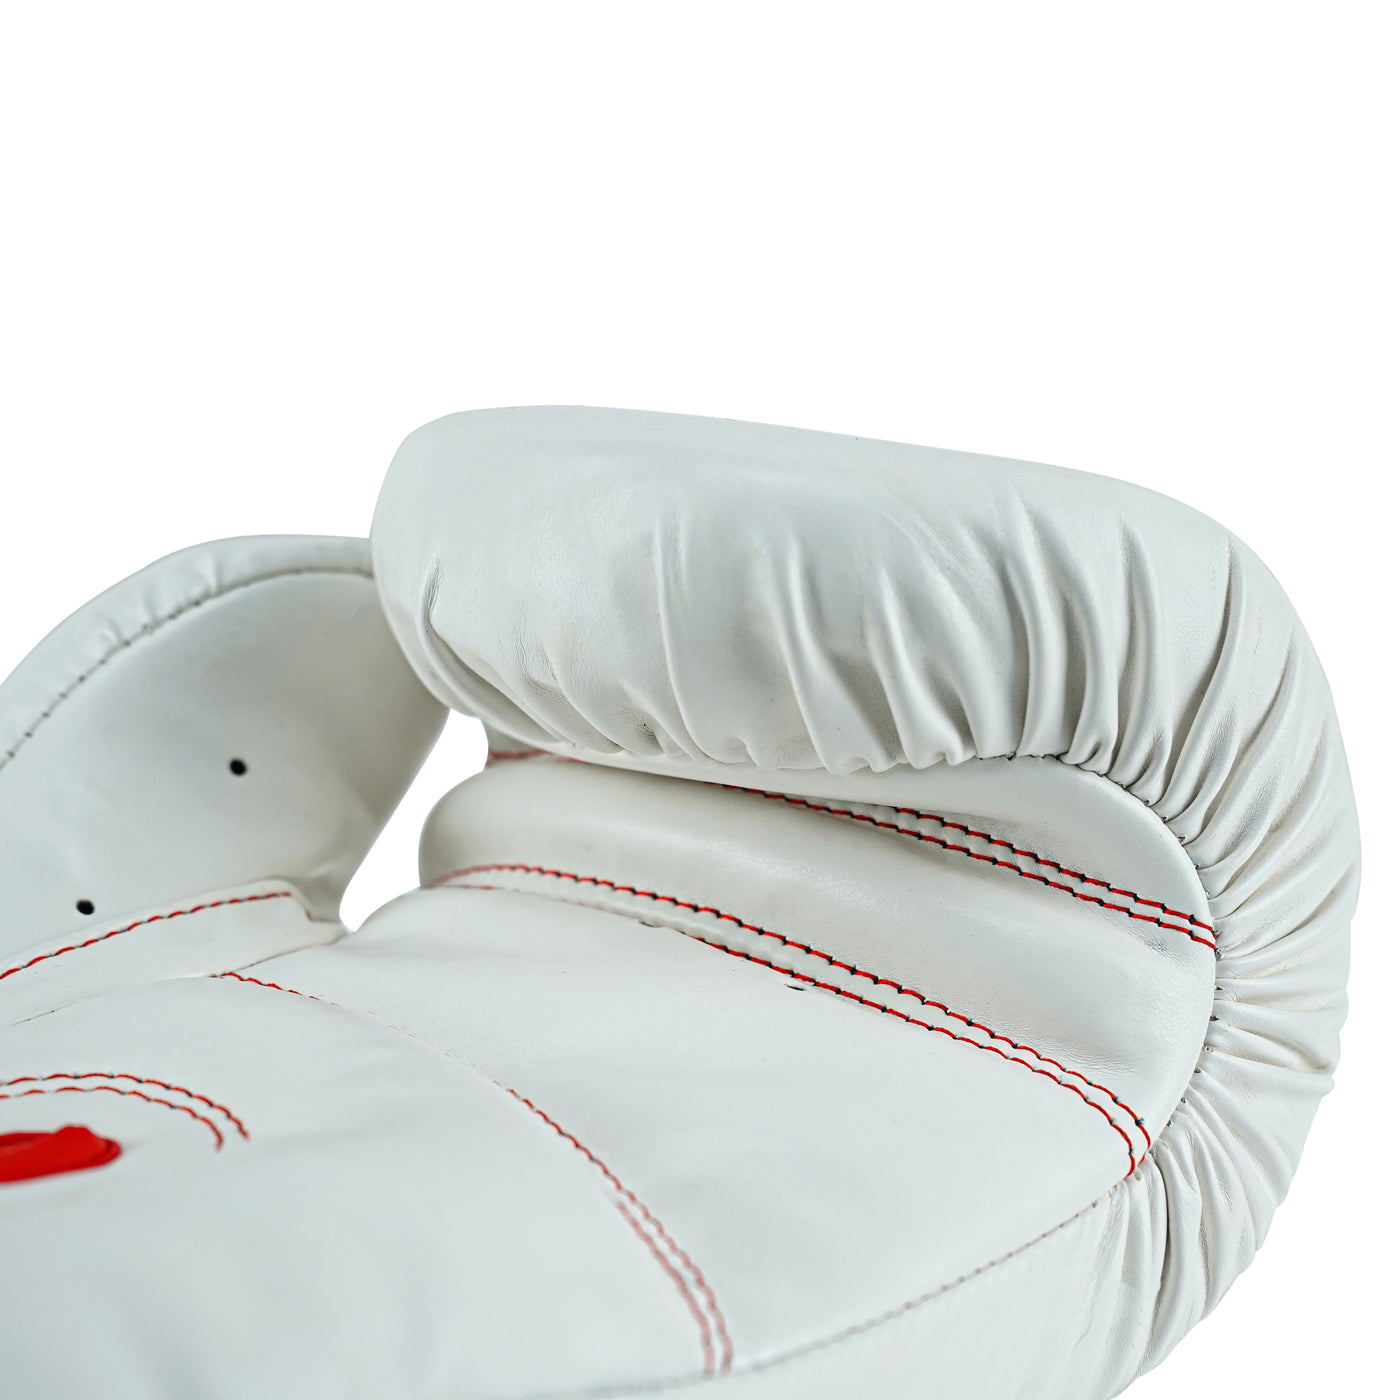 Custom White PU Leather Boxing Training Gloves C16